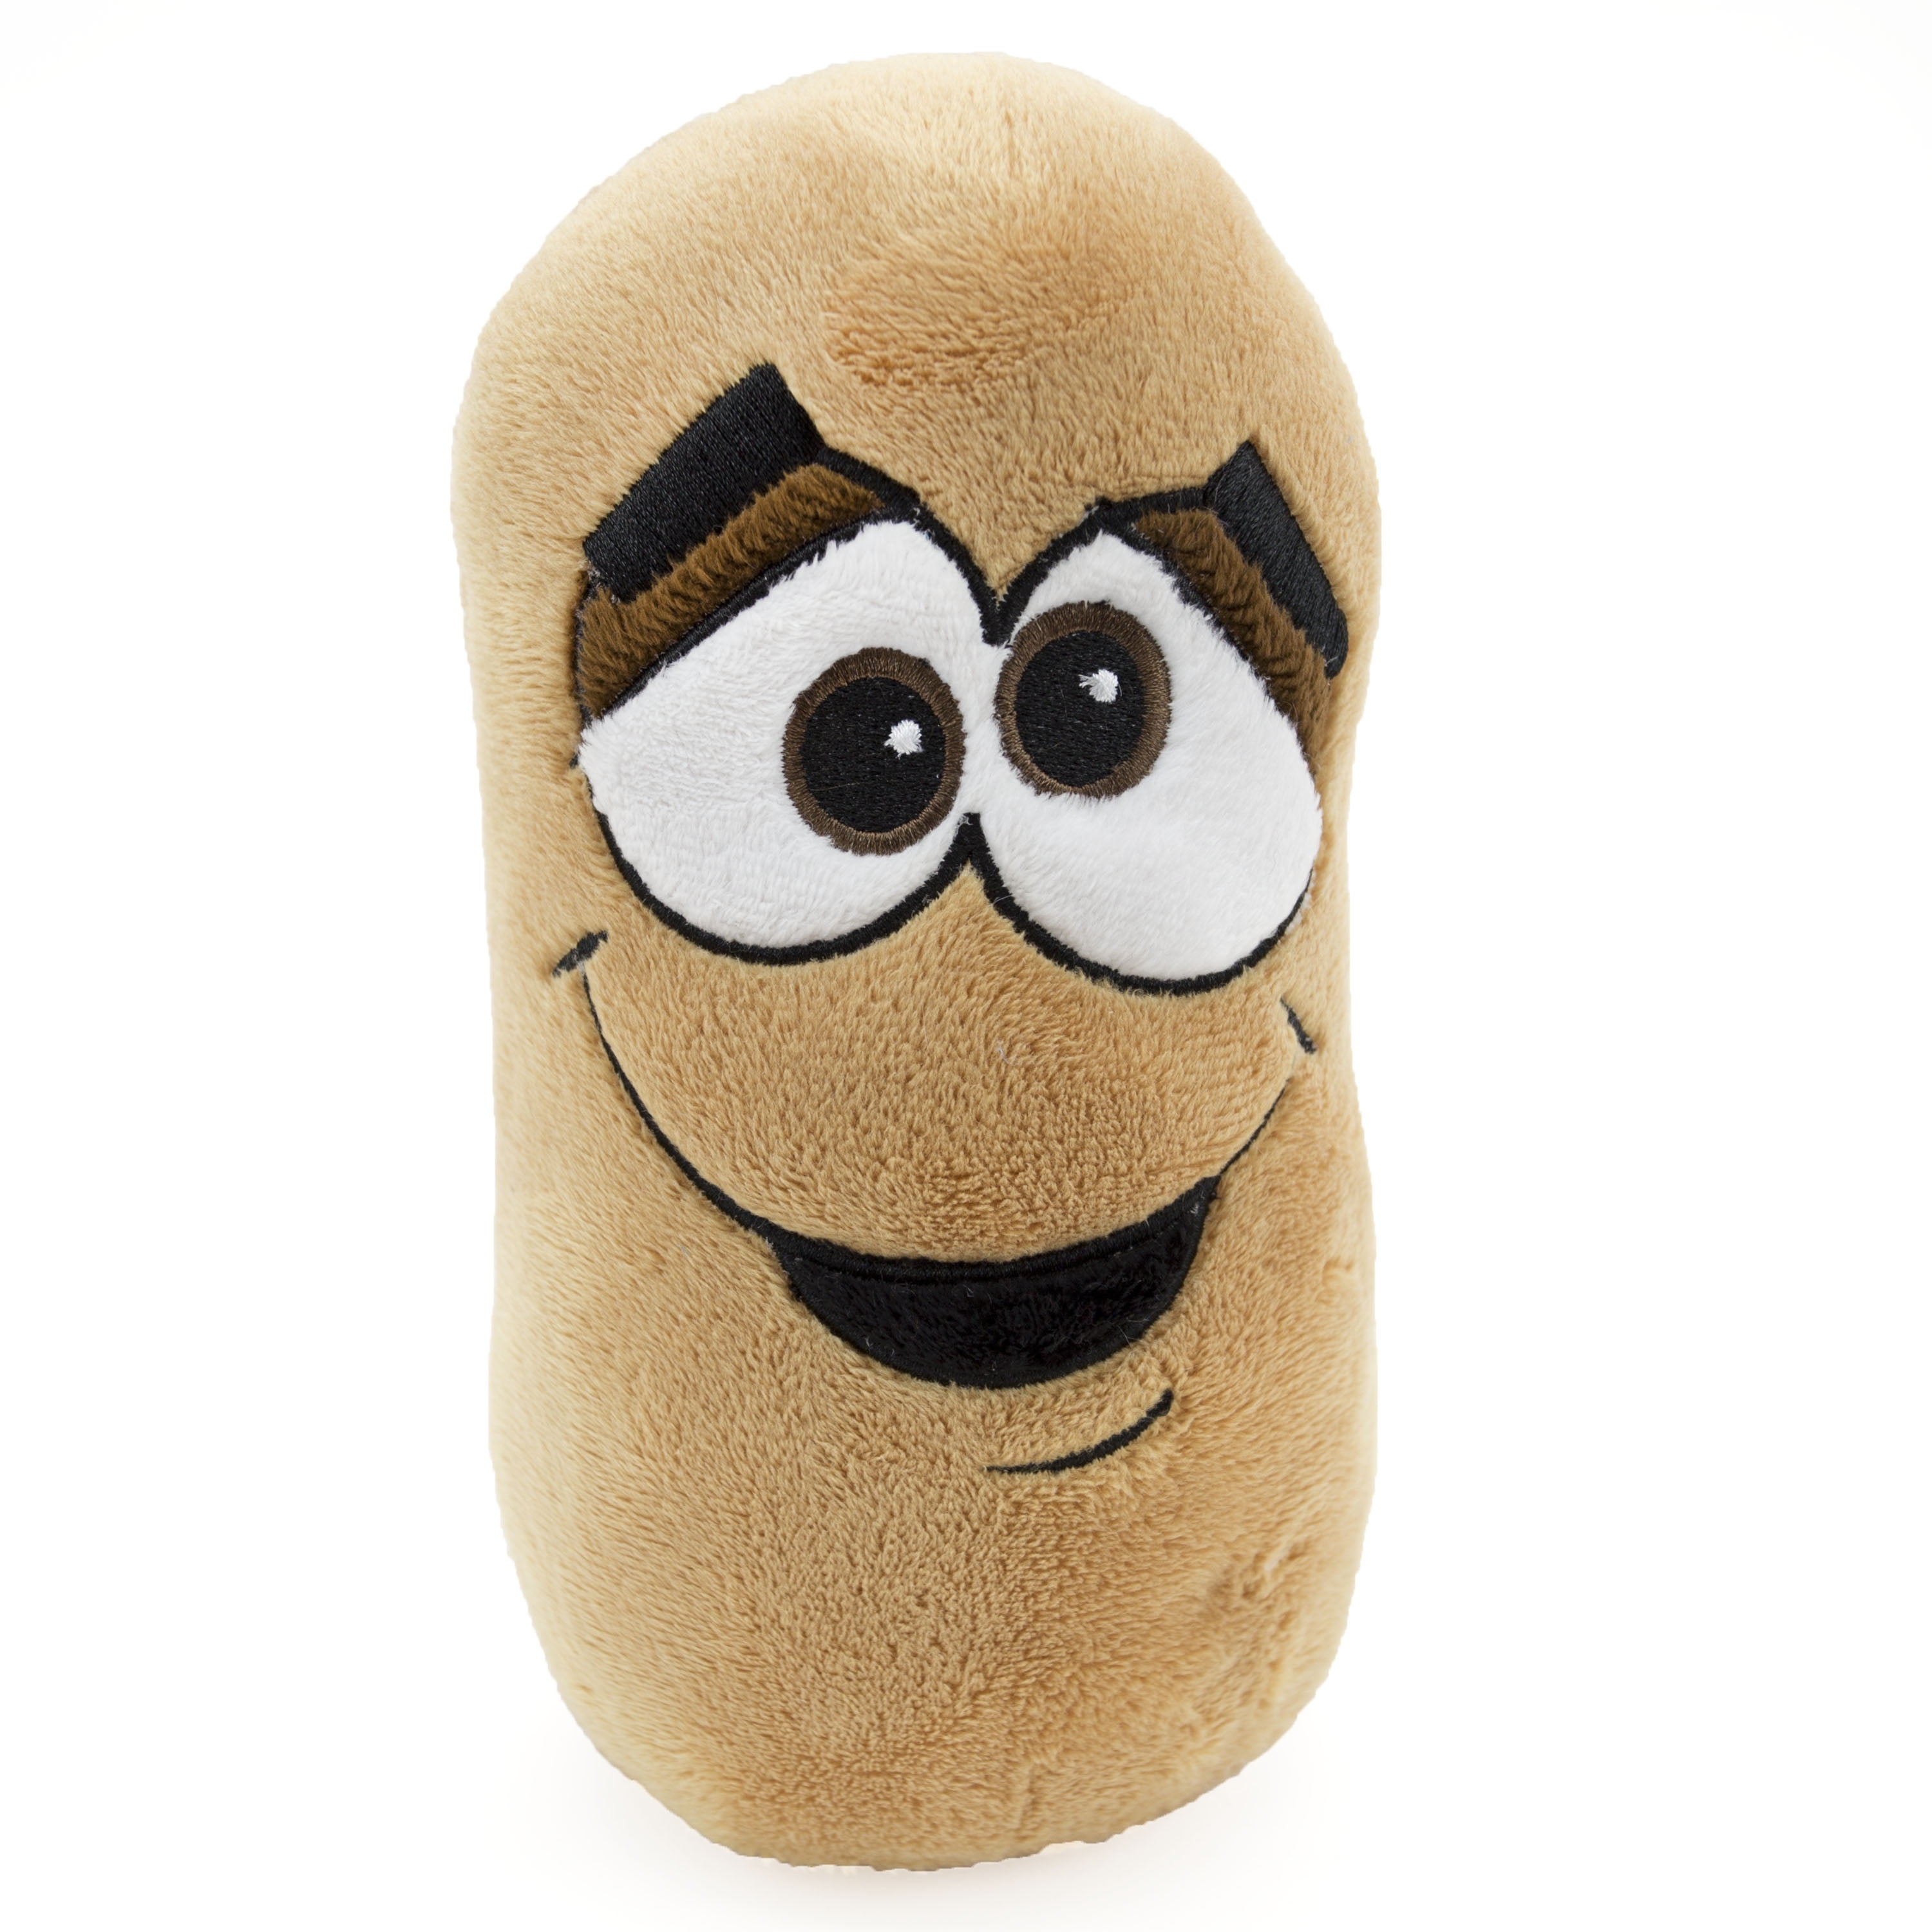 stuffed animal potato